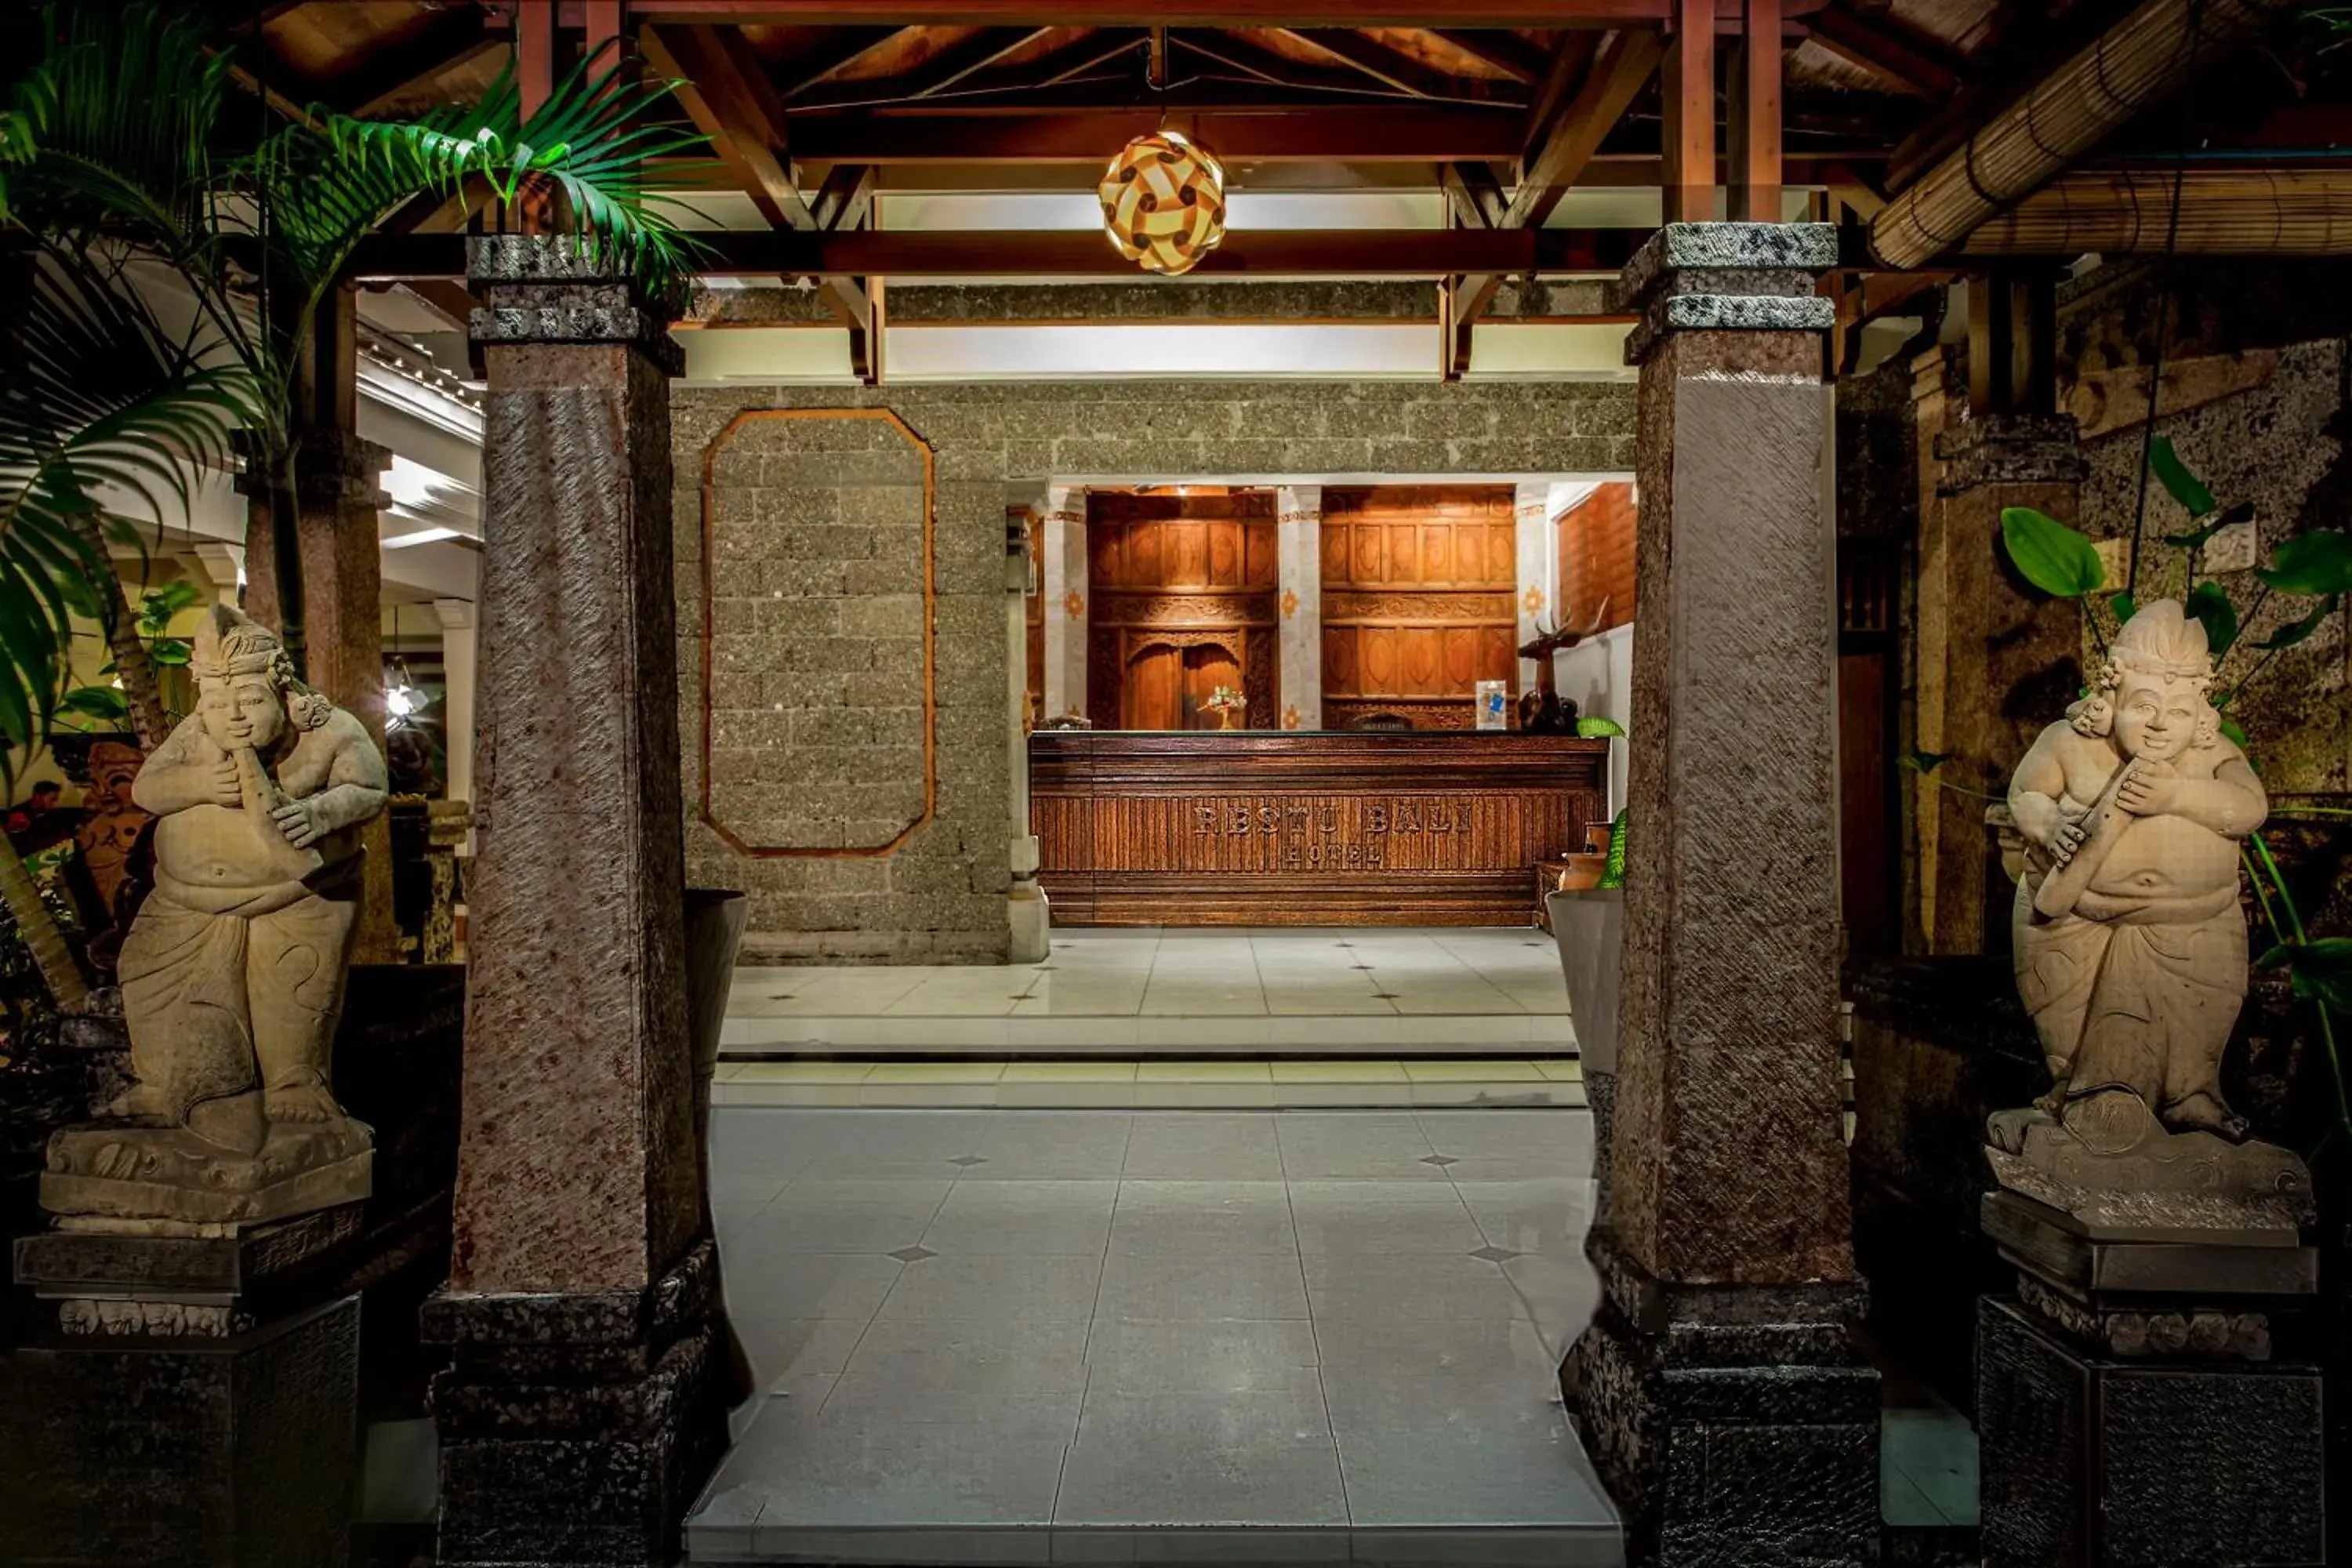 Lobby or reception in Restu Bali Hotel